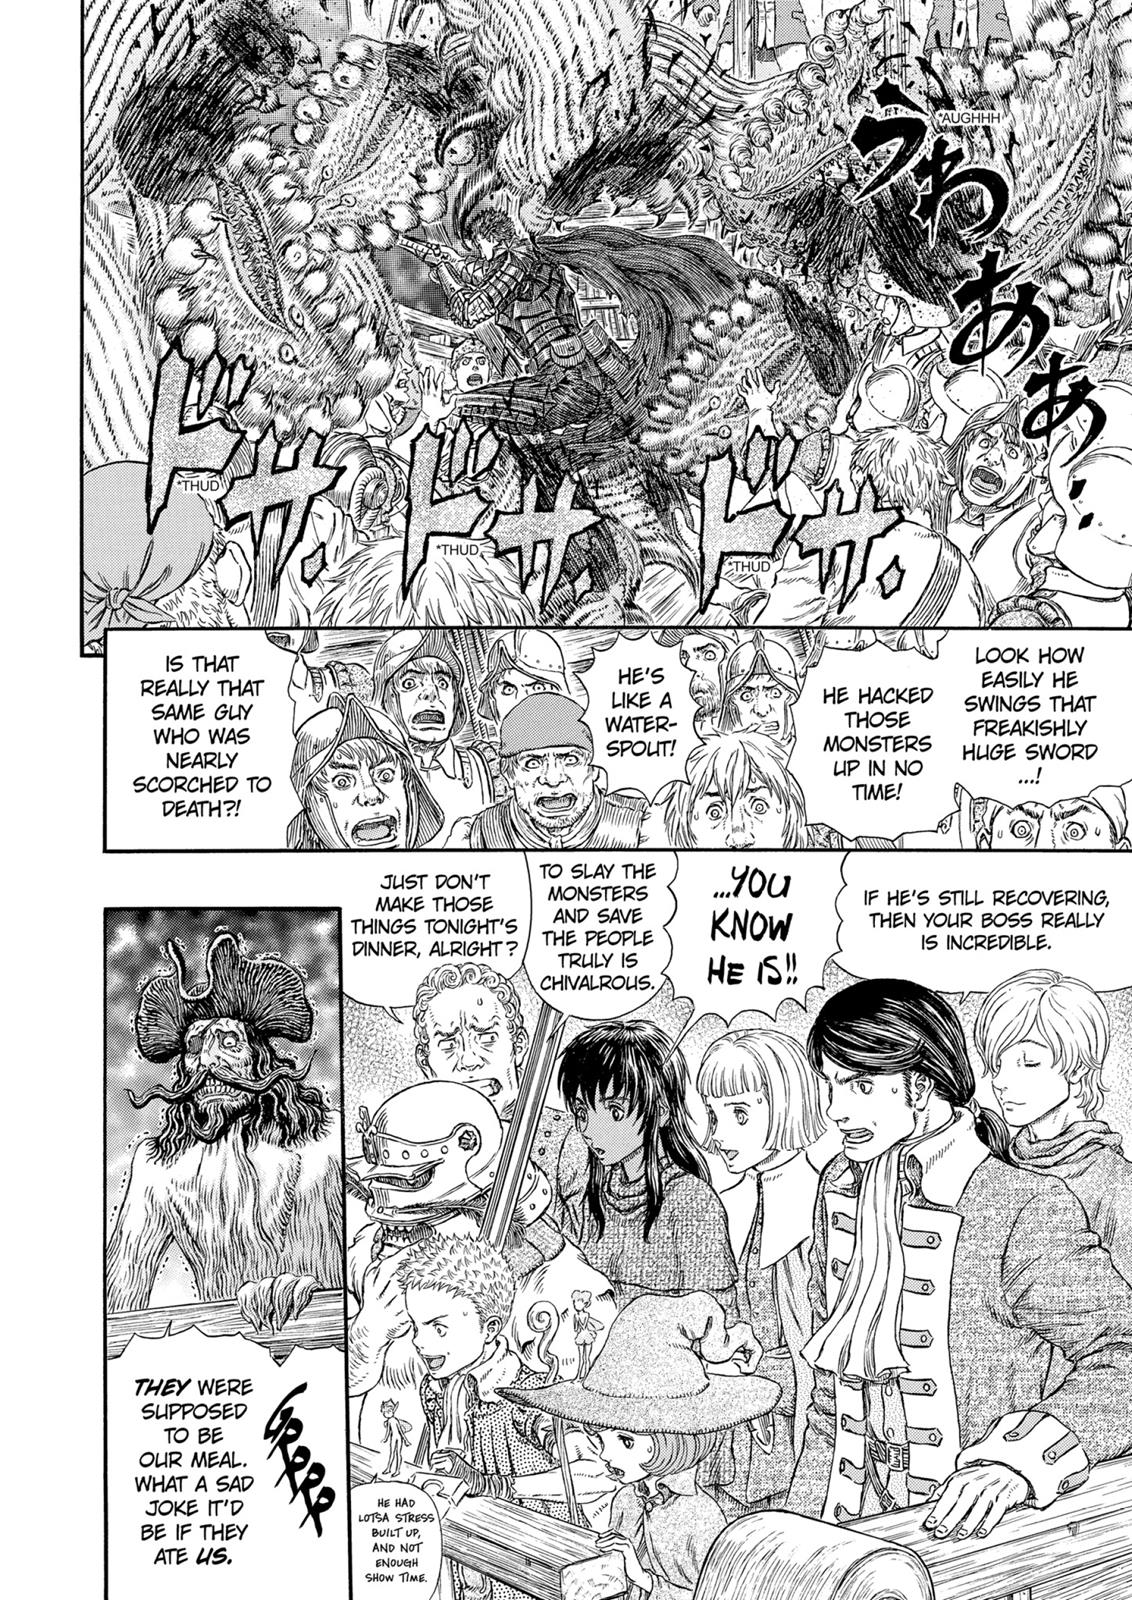 Berserk Manga Chapter 310 image 08